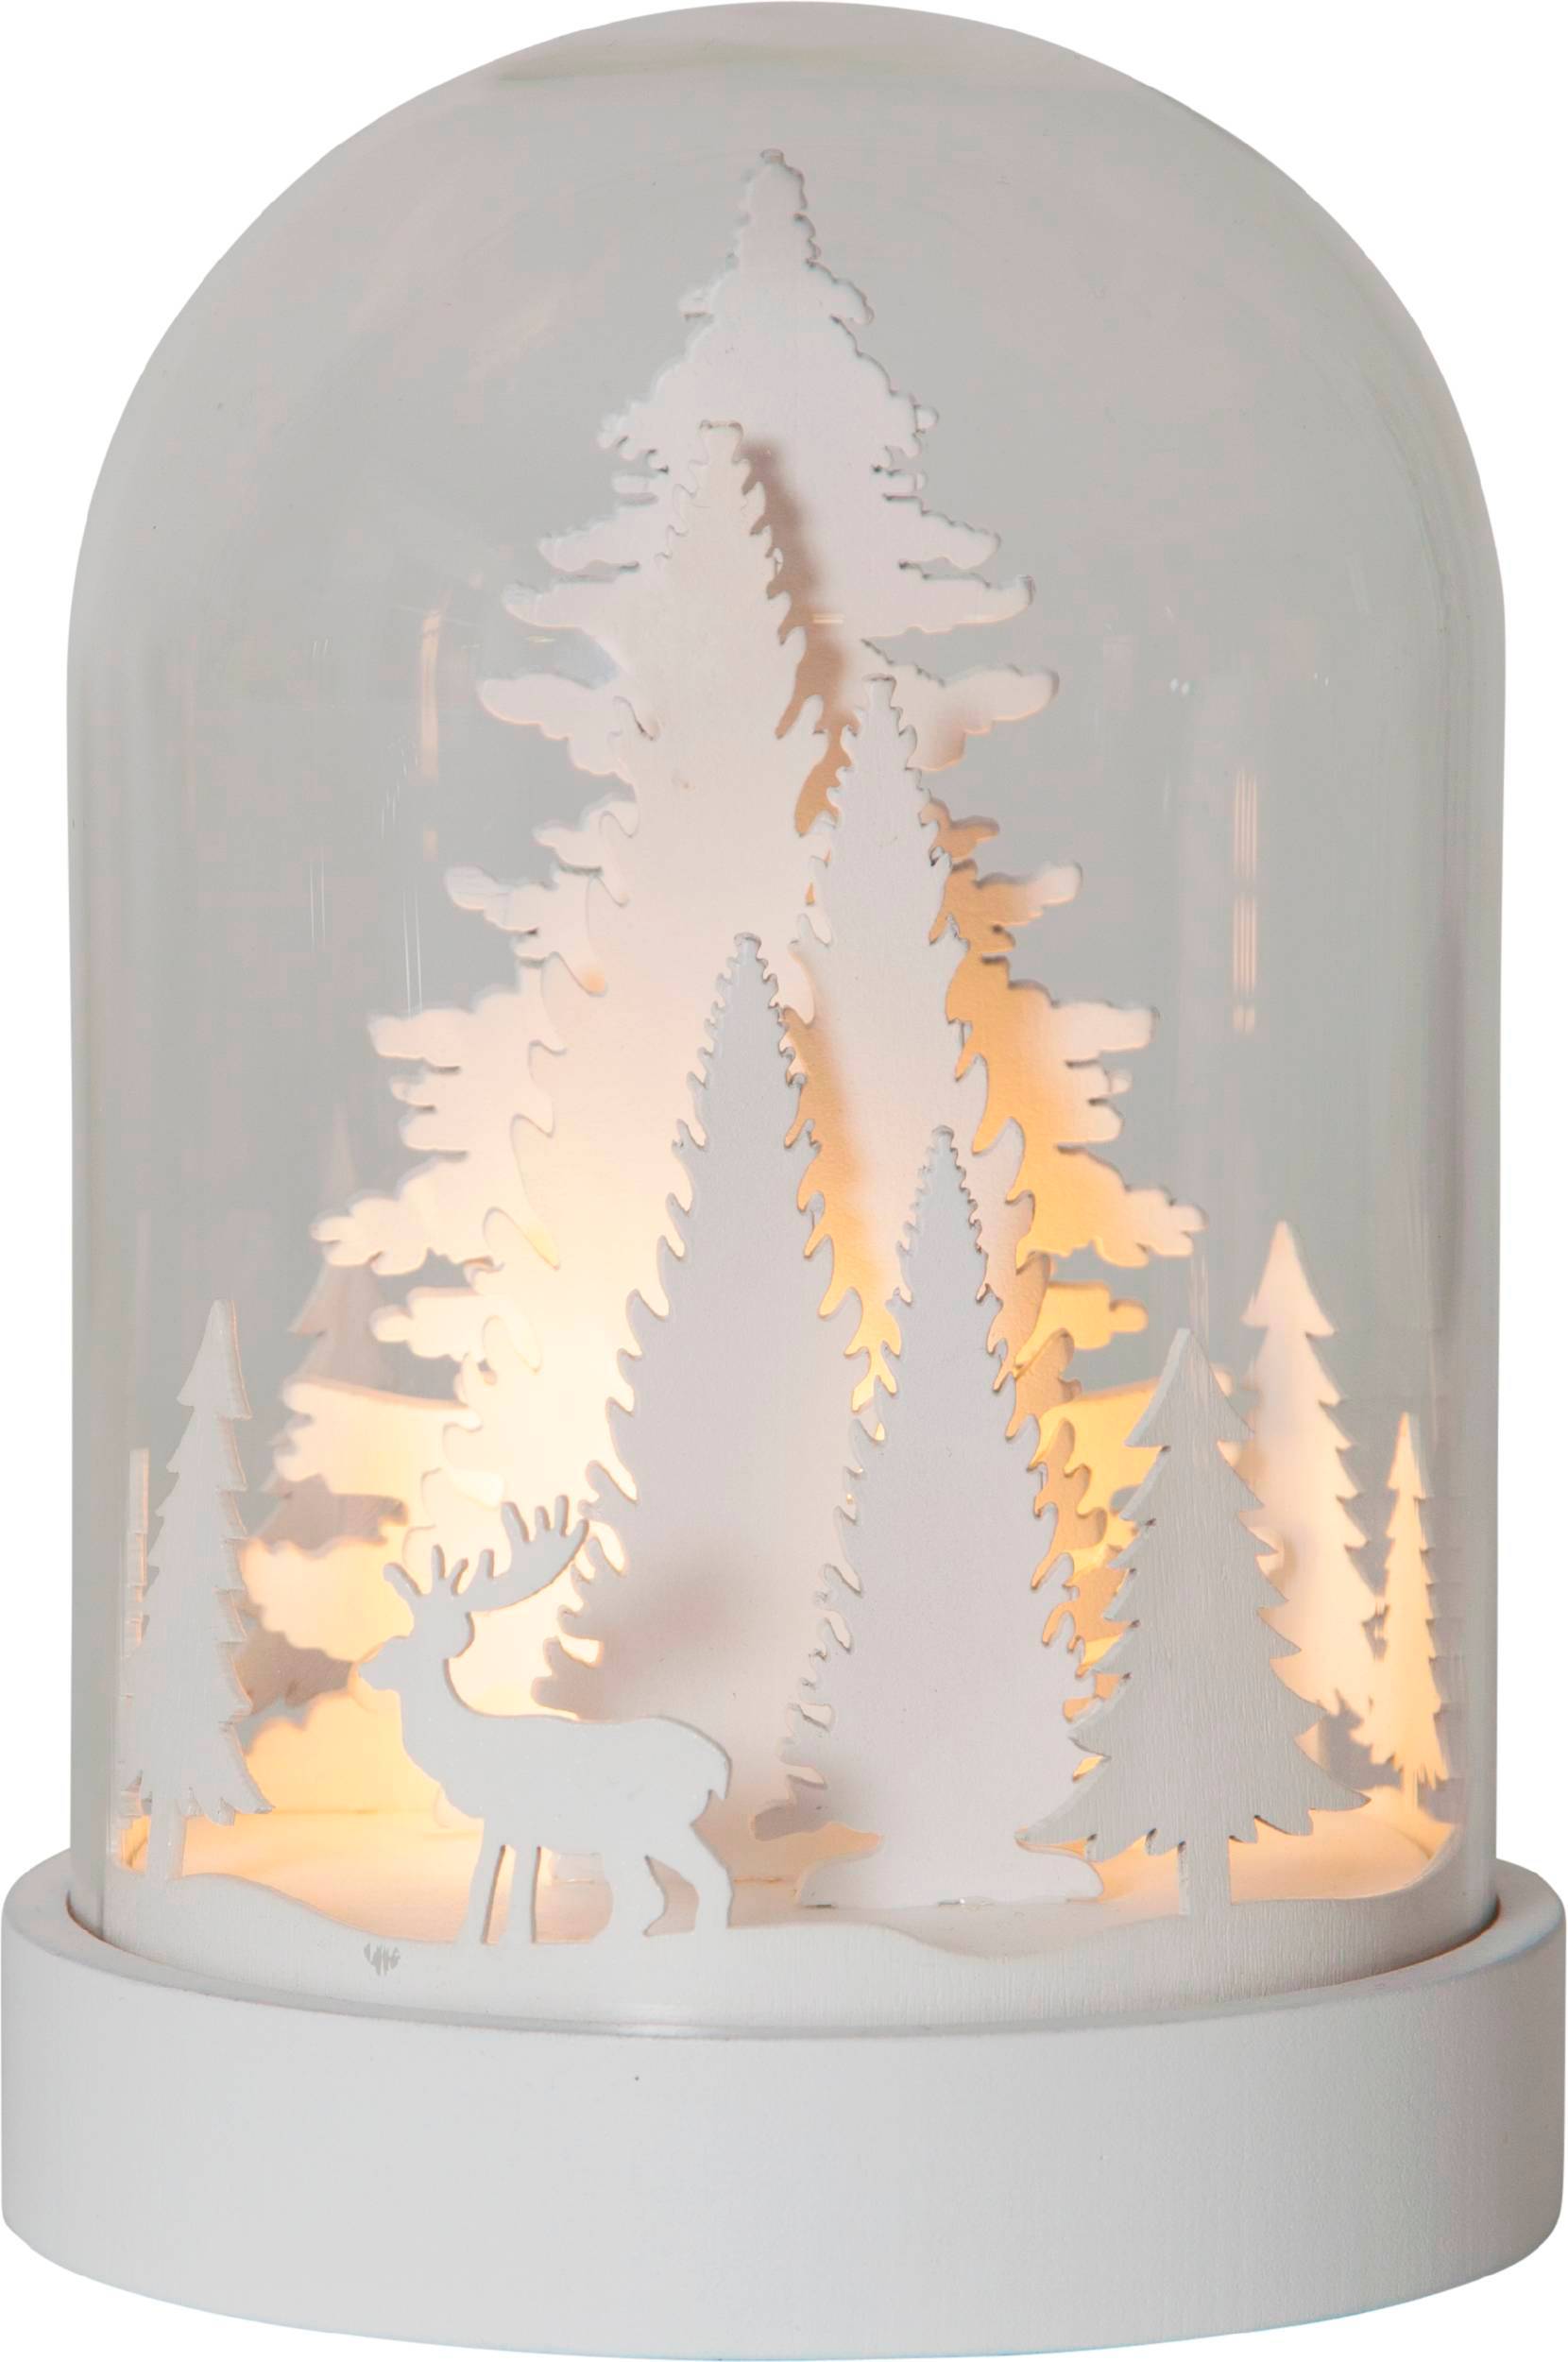 Asztali dekor üvegbúra erdő LED3 fehér 3el@